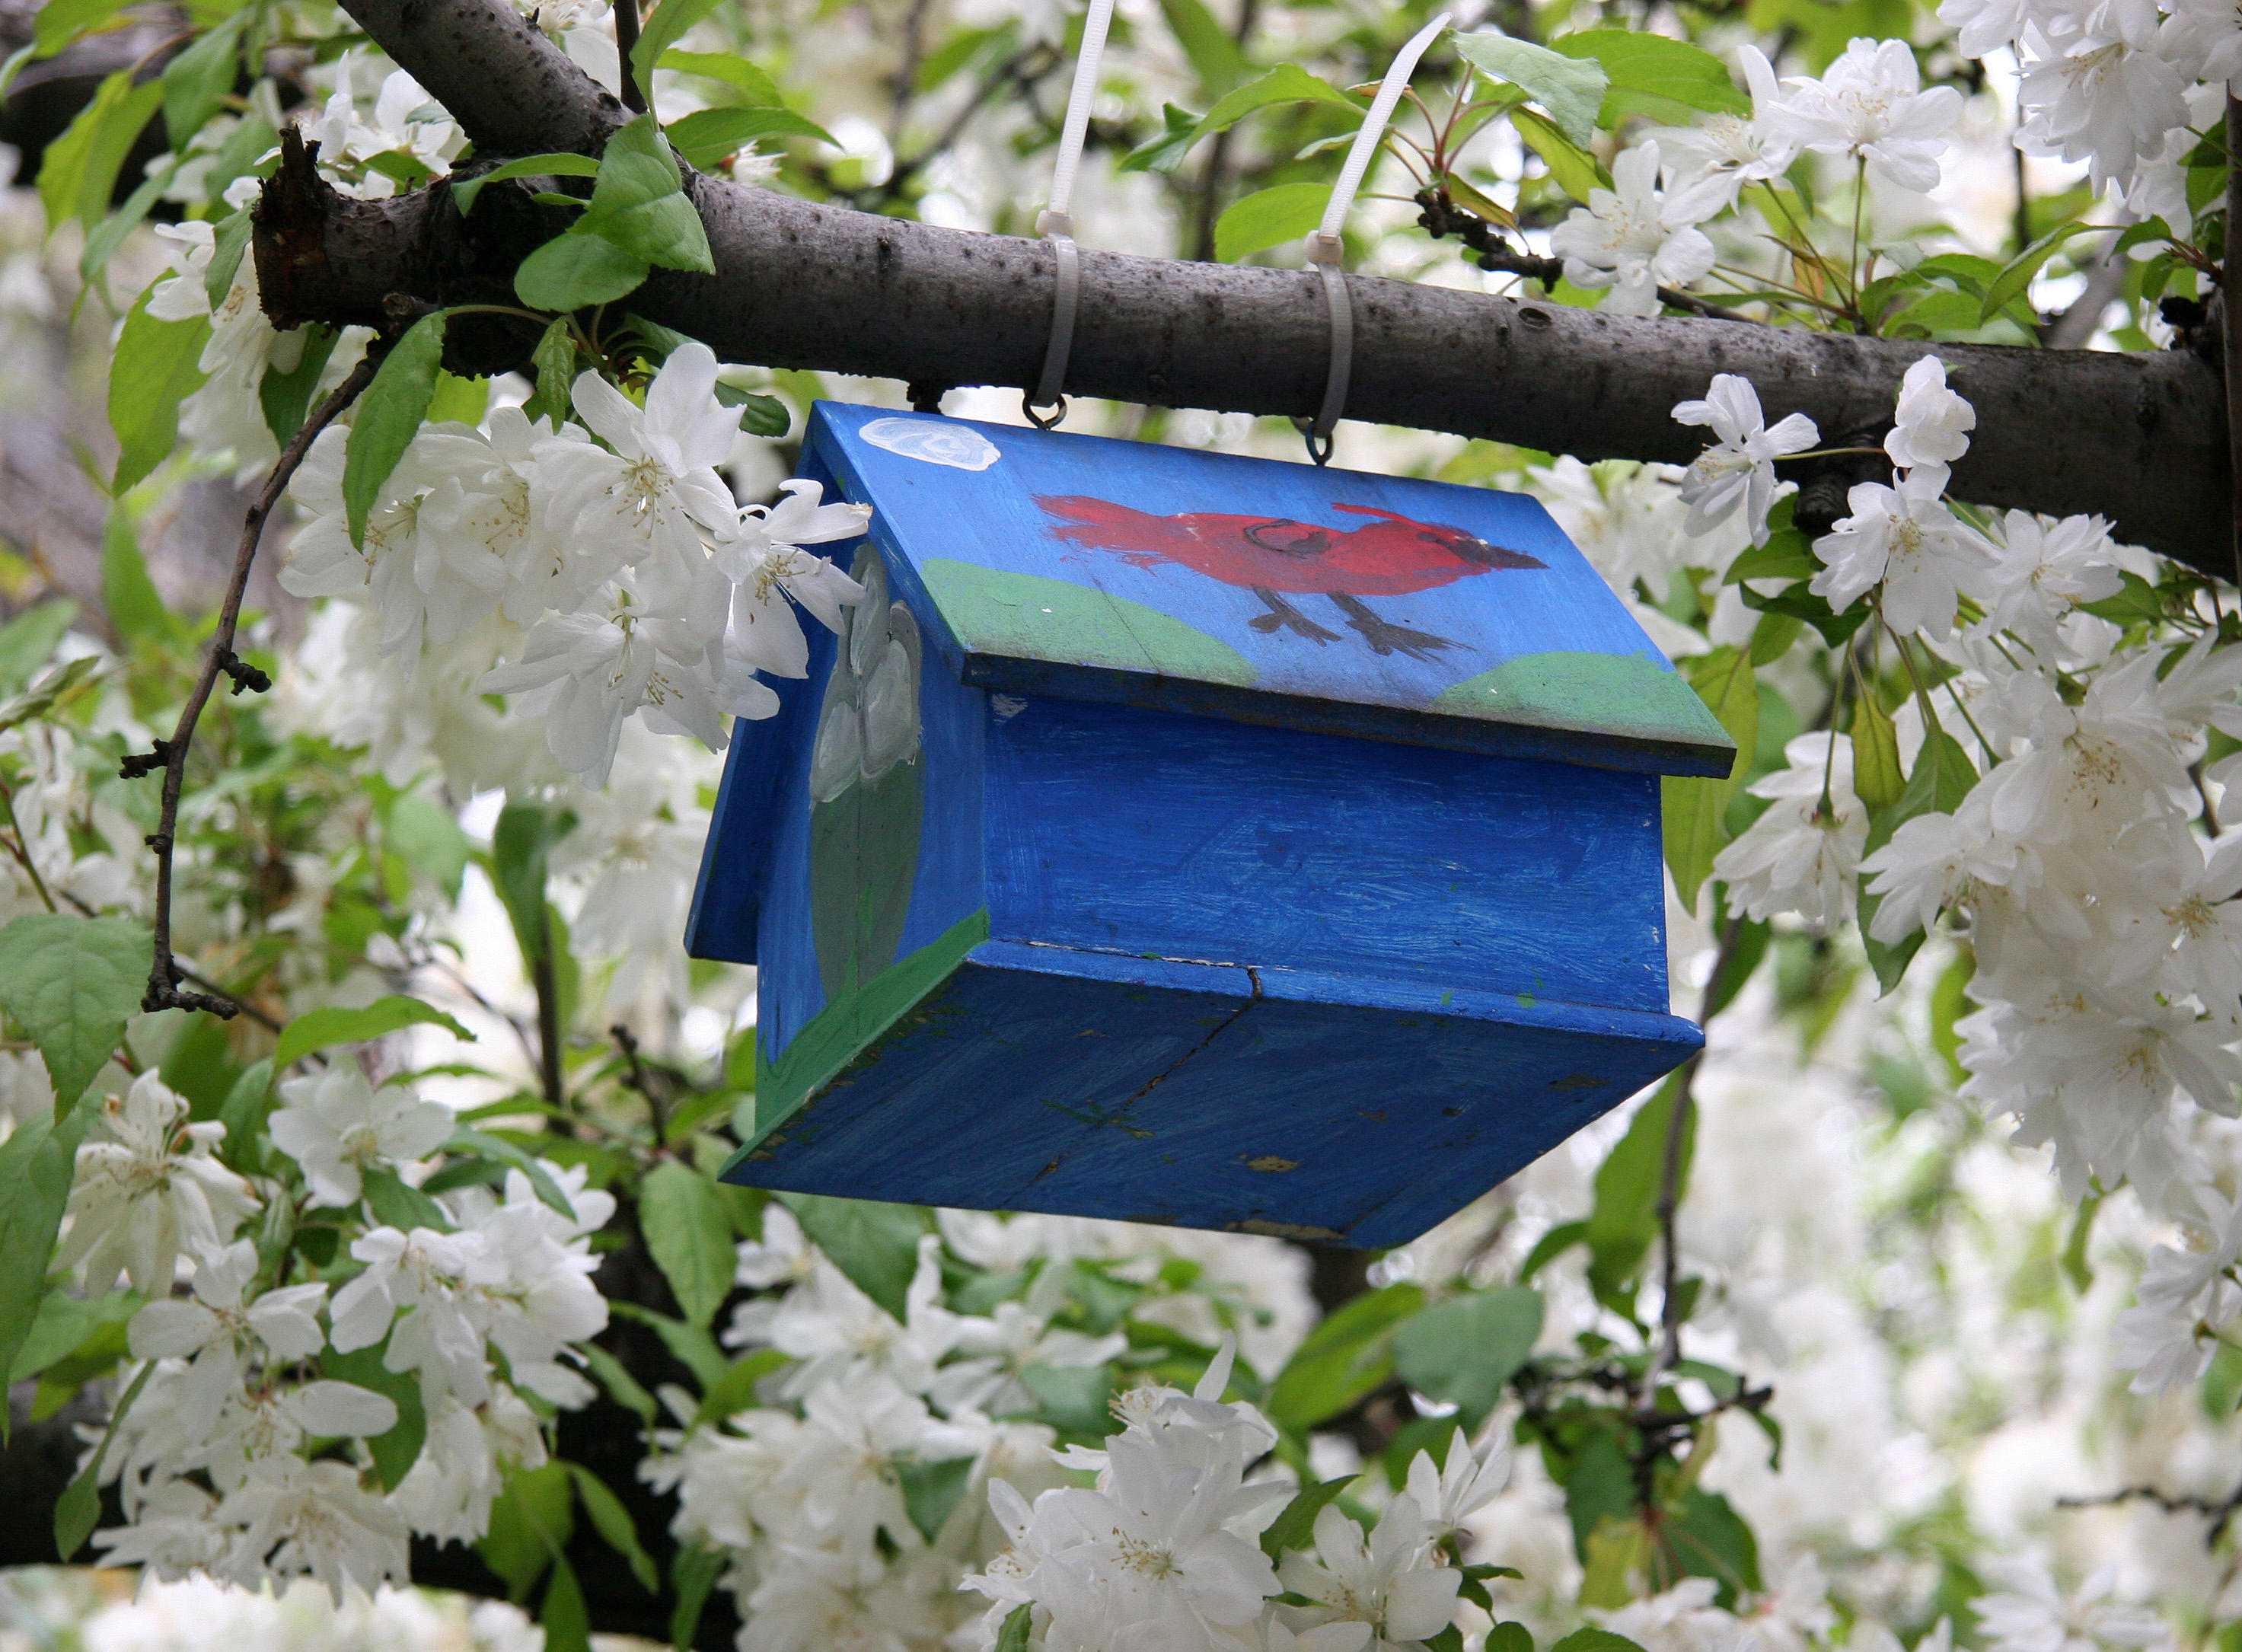 Blue Birdhouse in an Apple Tree